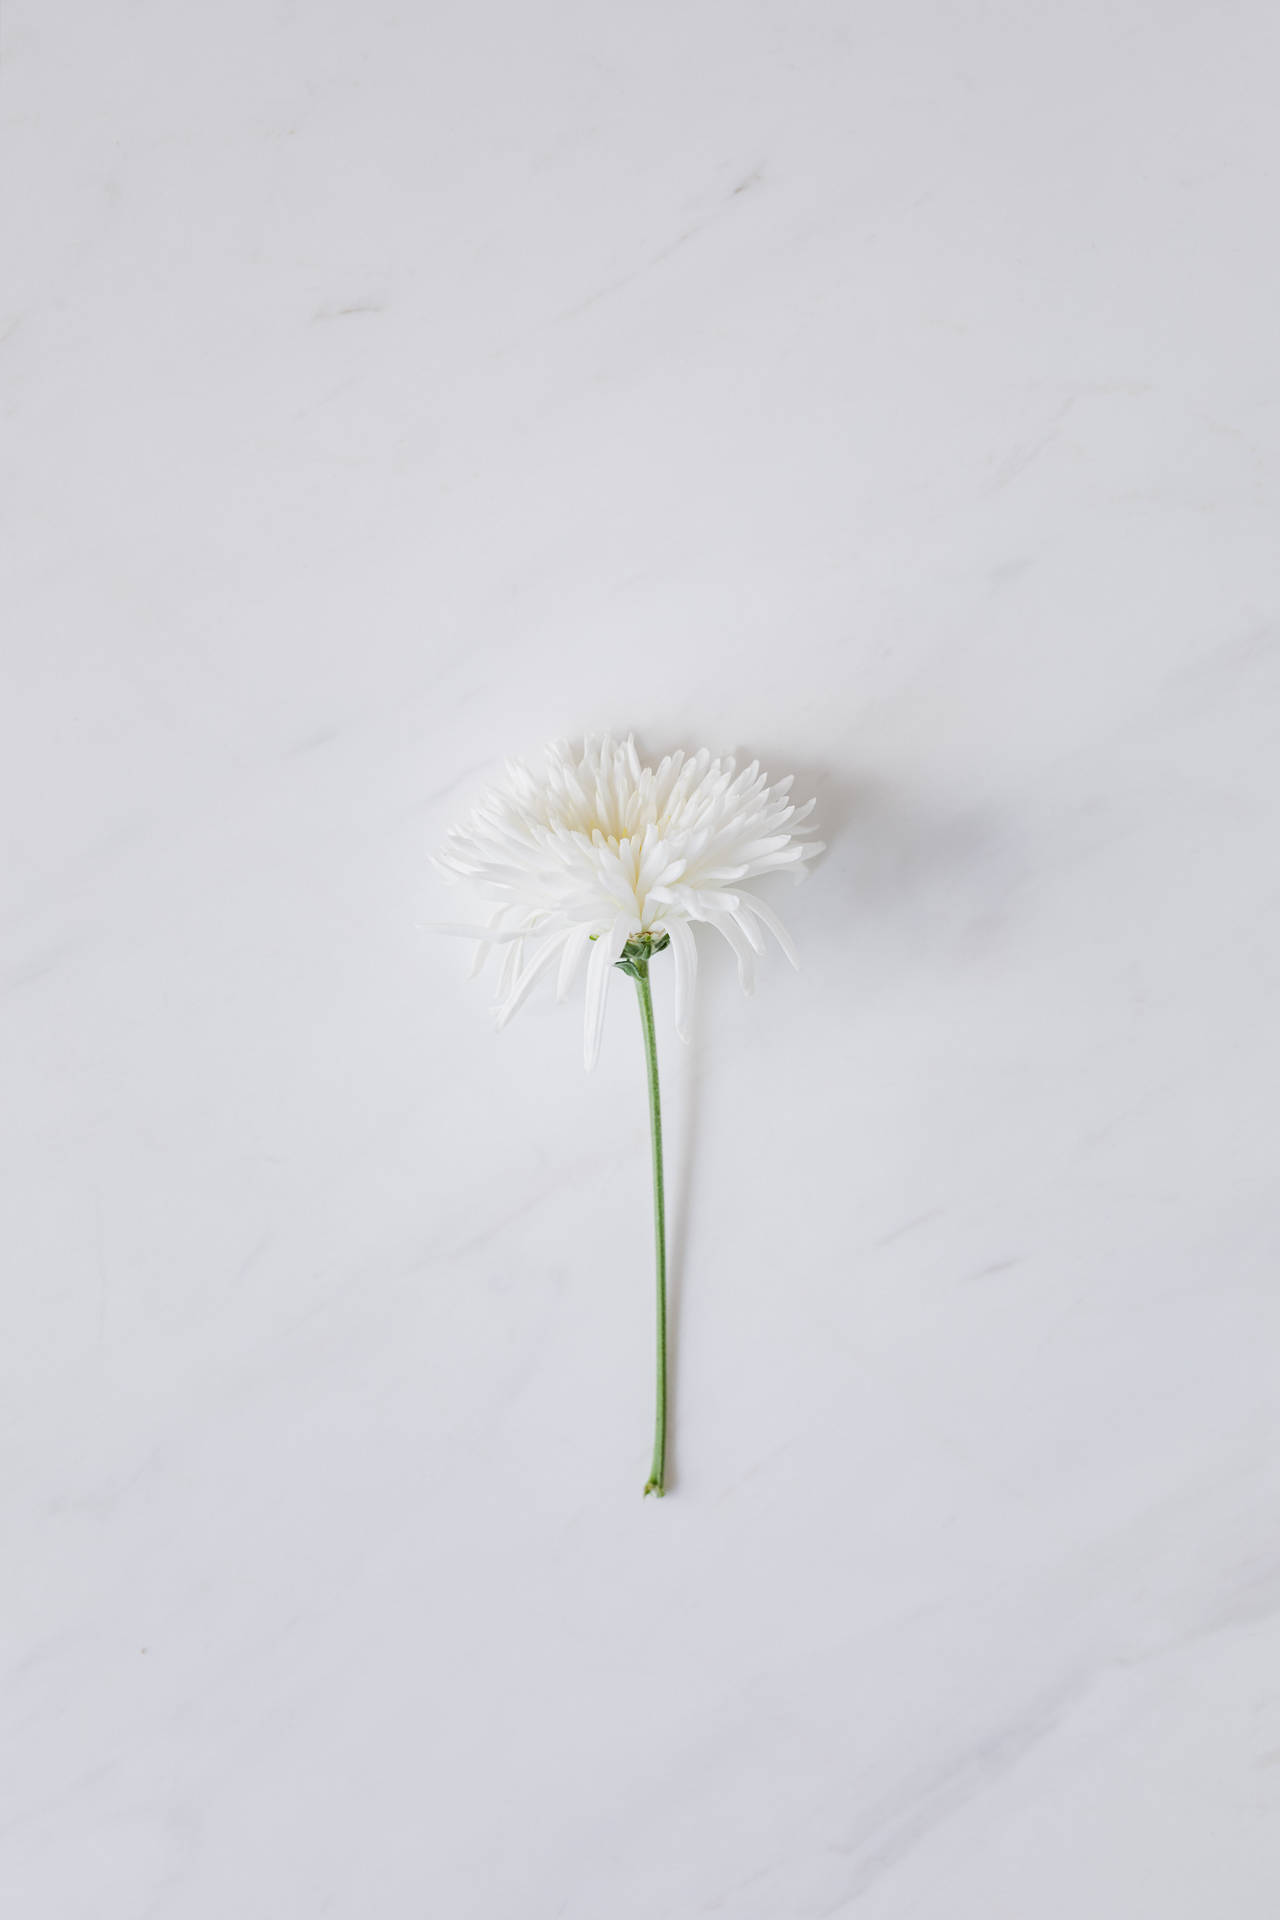 White Flower On White Background Wallpaper